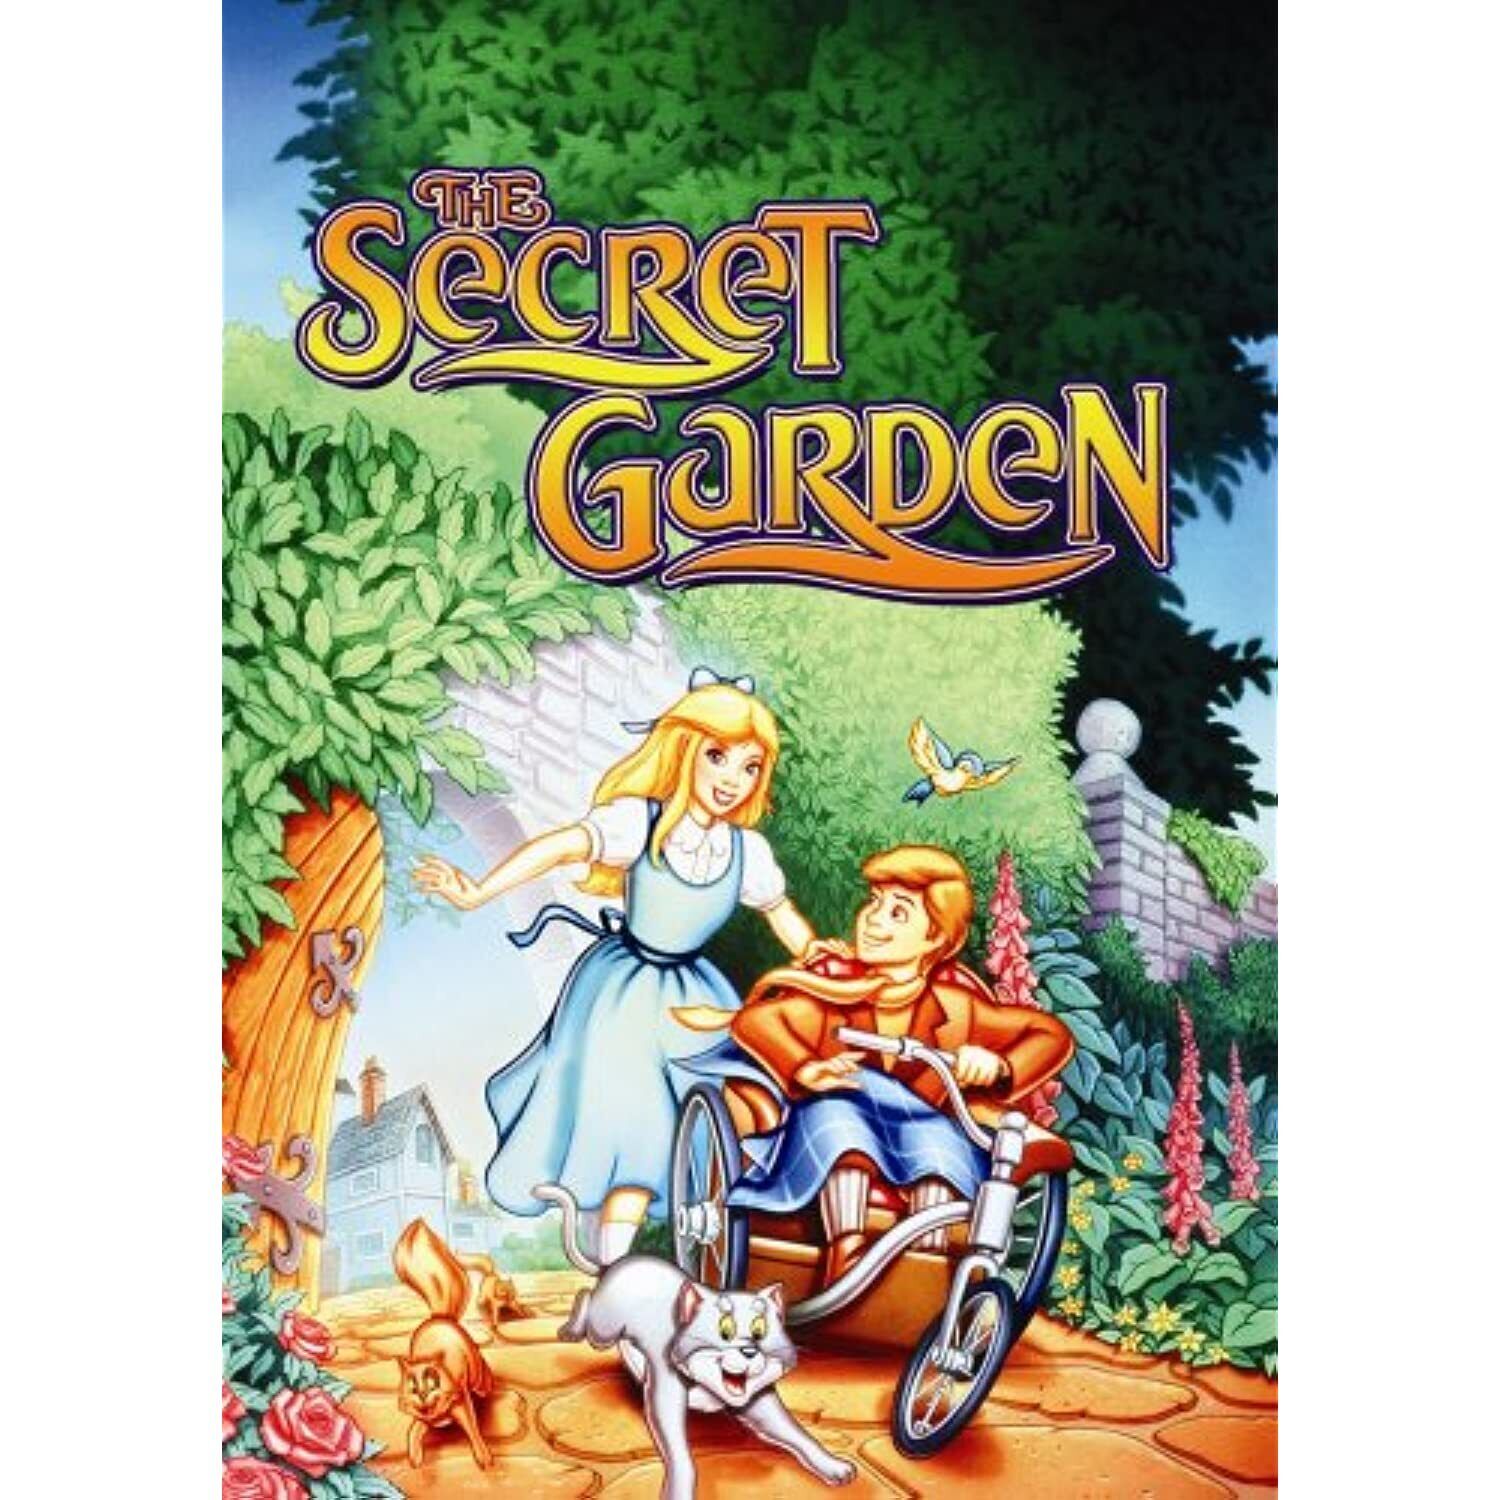 The Secret Garden (DVD, 2007) for sale online | eBay